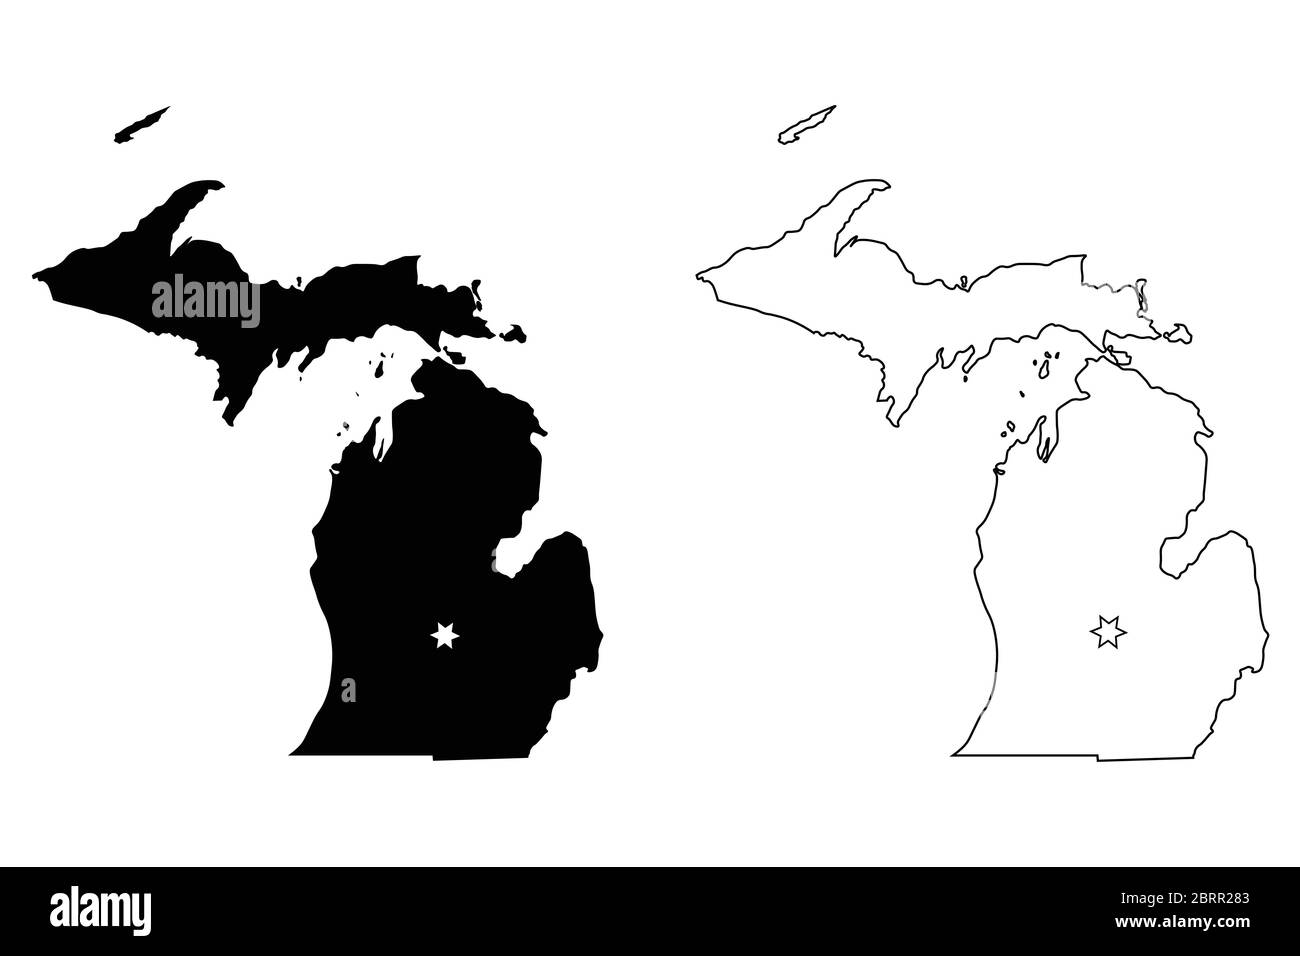 Michigan MI State Map USA mit Capital City Star in Lansing. Schwarze Silhouette und Umriss isoliert auf weißem Hintergrund. EPS-Vektor Stock Vektor